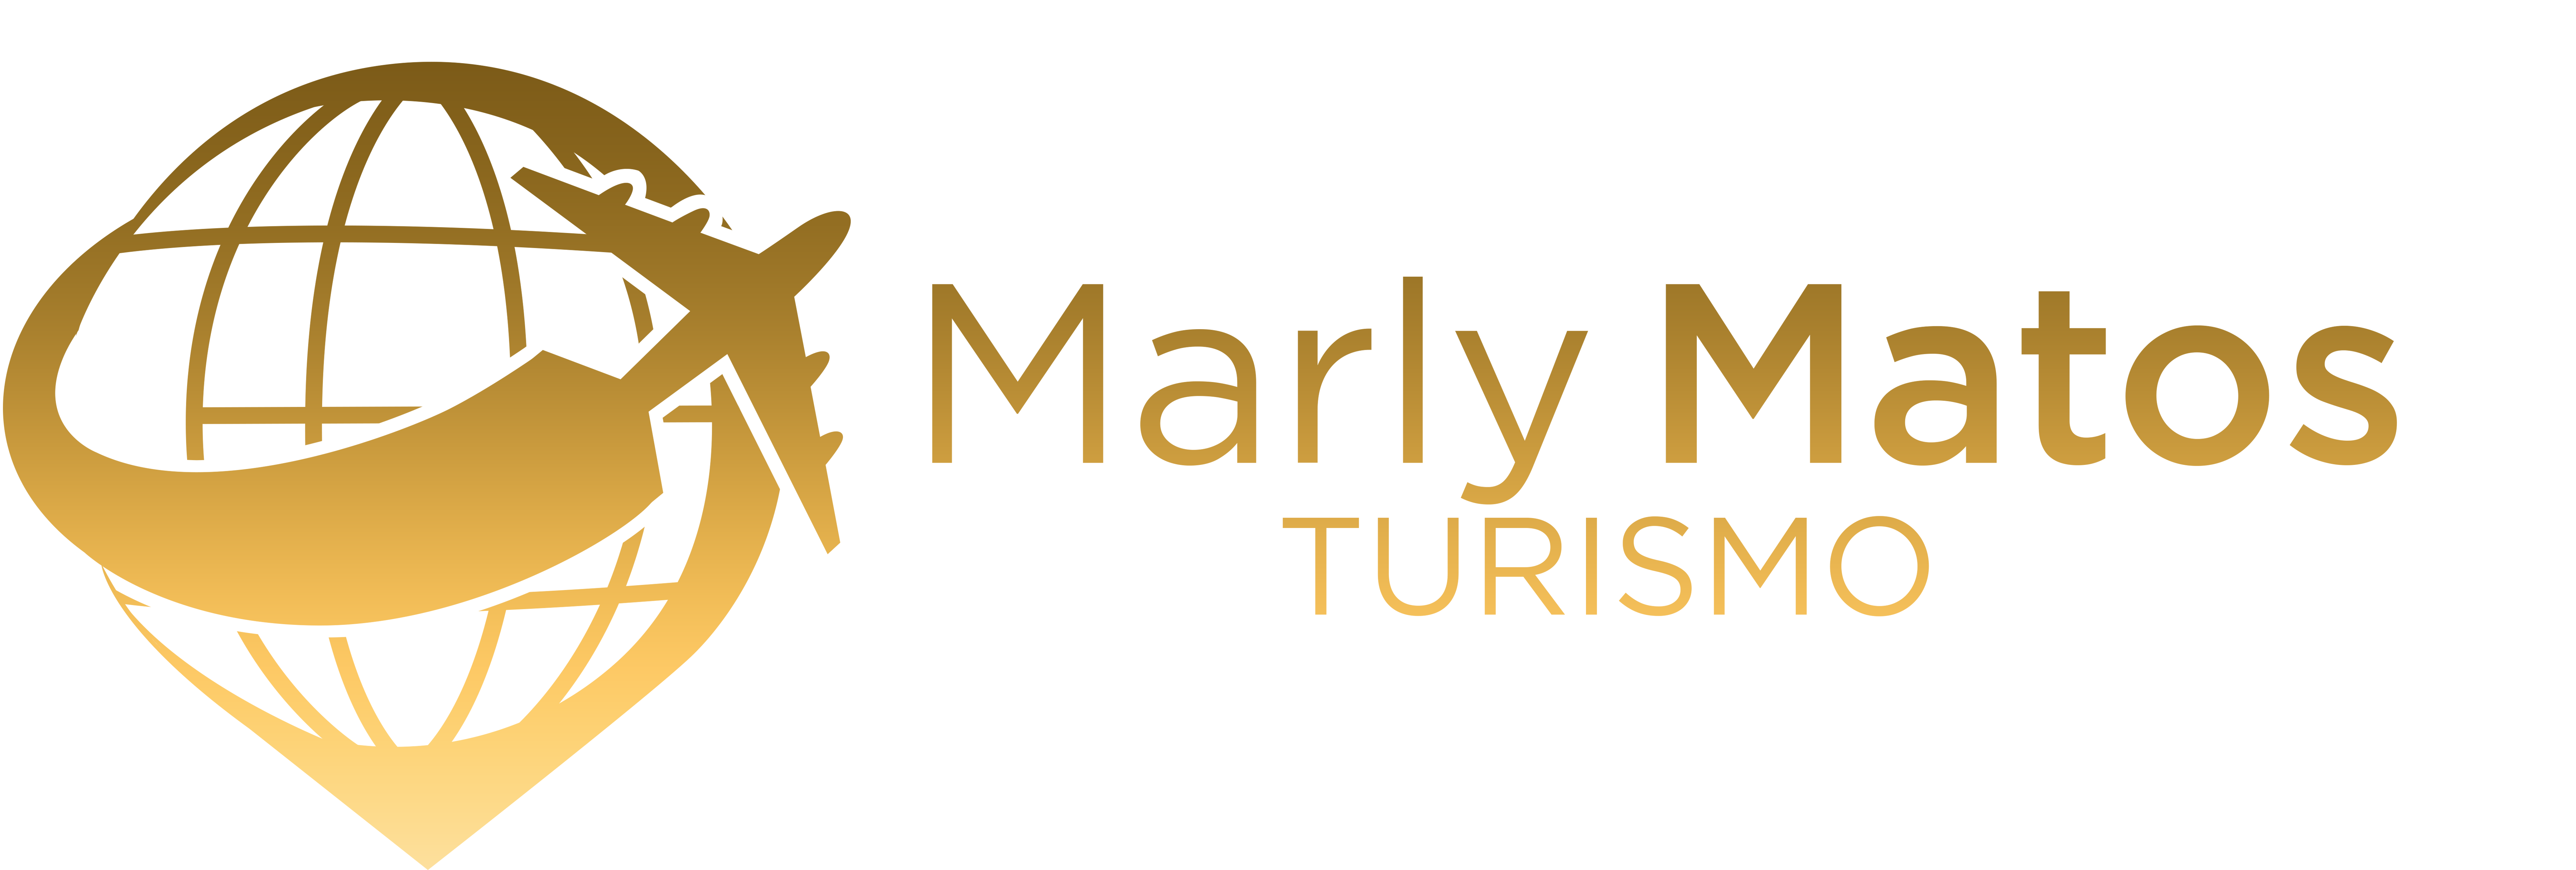 Marly Matos Turismo